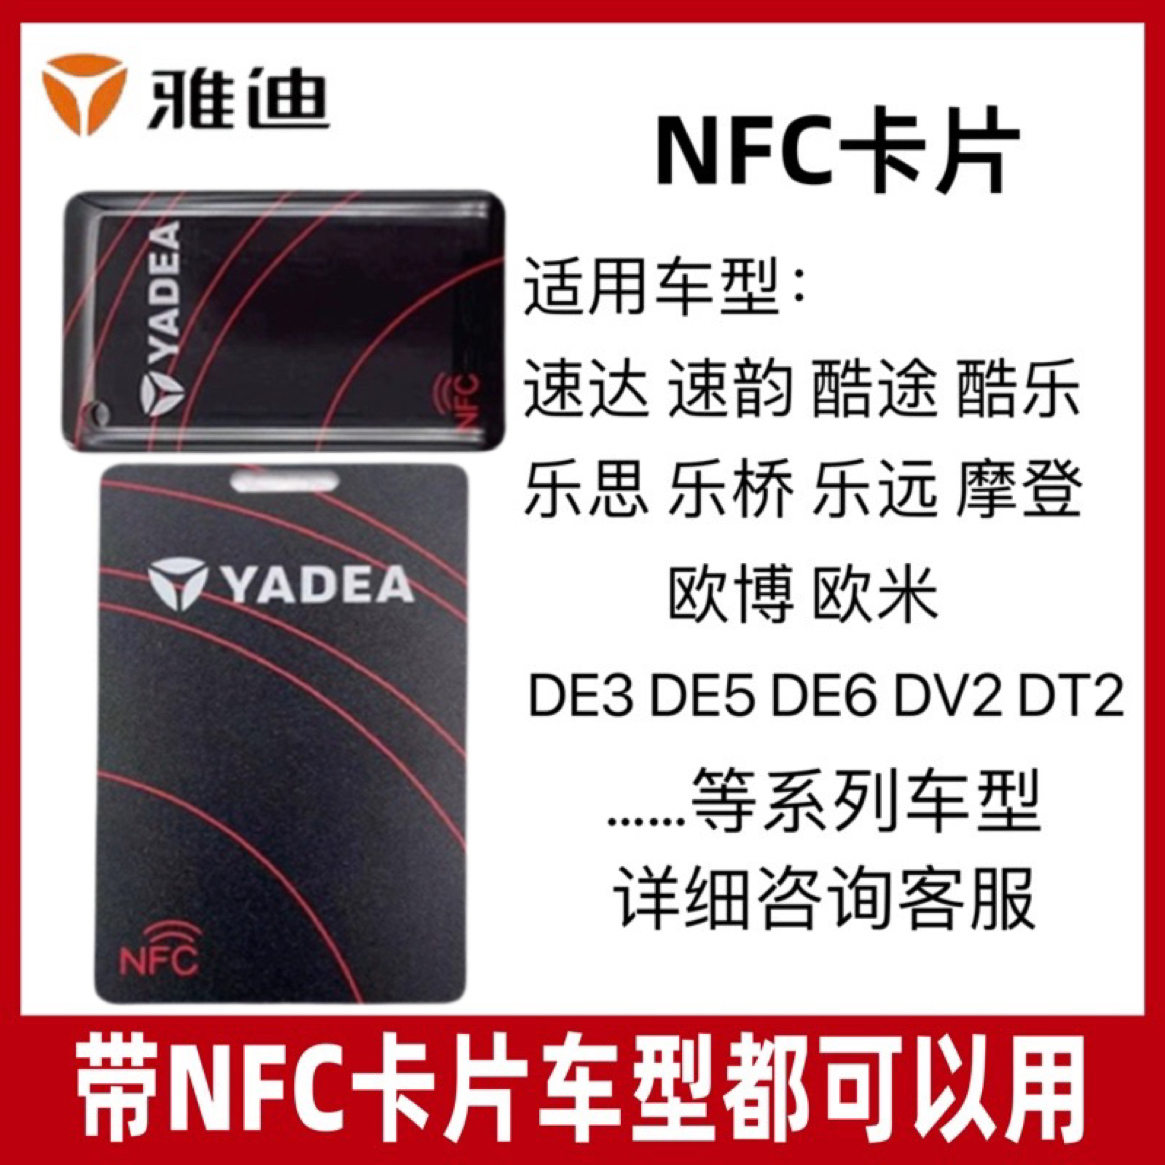 雅迪电动车原厂智能nfc卡NFC钥匙感应解锁卡片